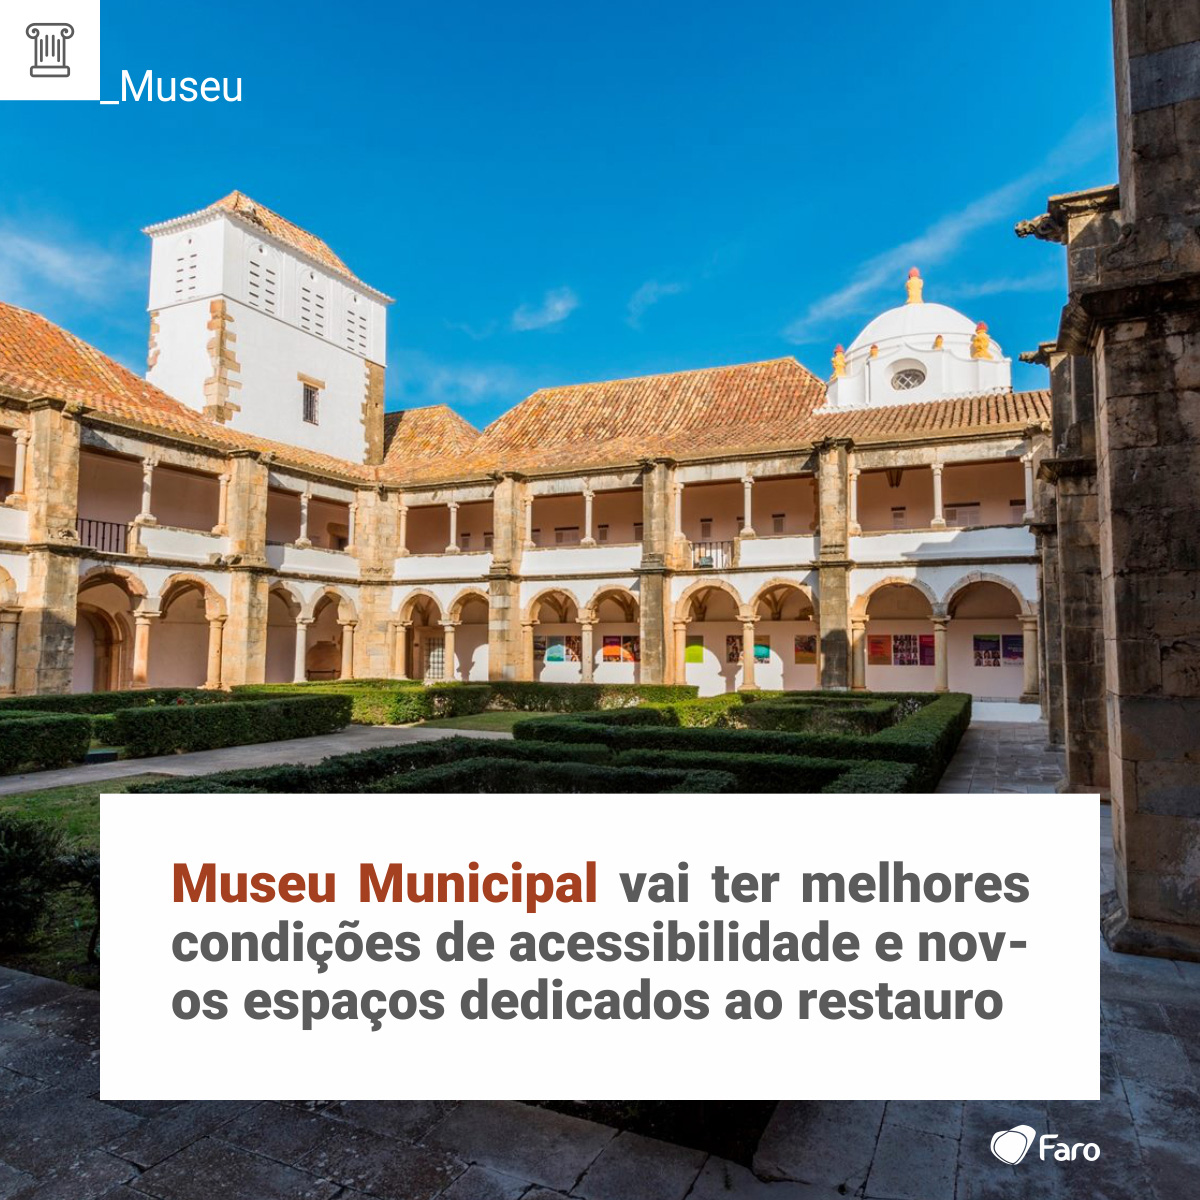 Museu Municipal de Faro vai ter melhores condições de acessibilidade e novos espaços dedicados ao restauro